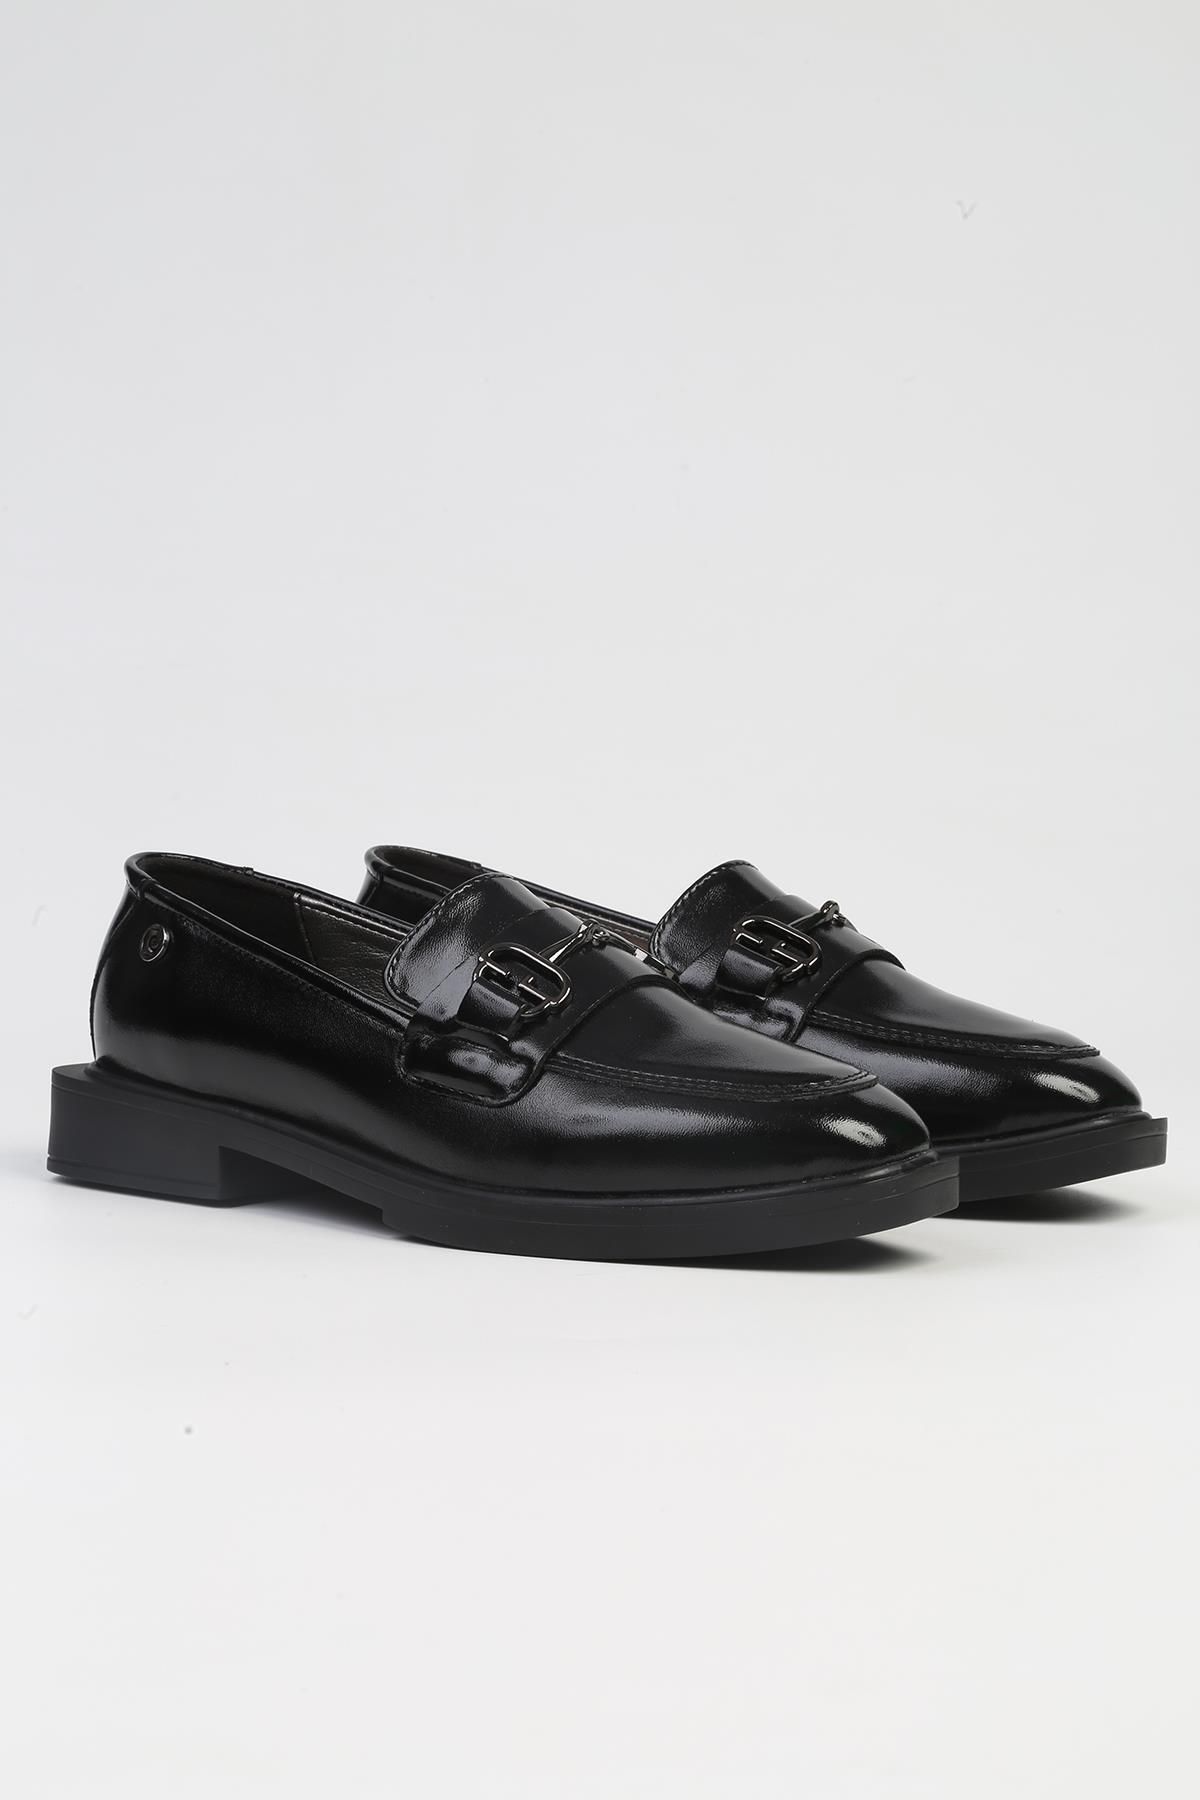 Pierre Cardin ® | PC-53162 - 3441 Siyah-Kadın Günlük Ayakkabı